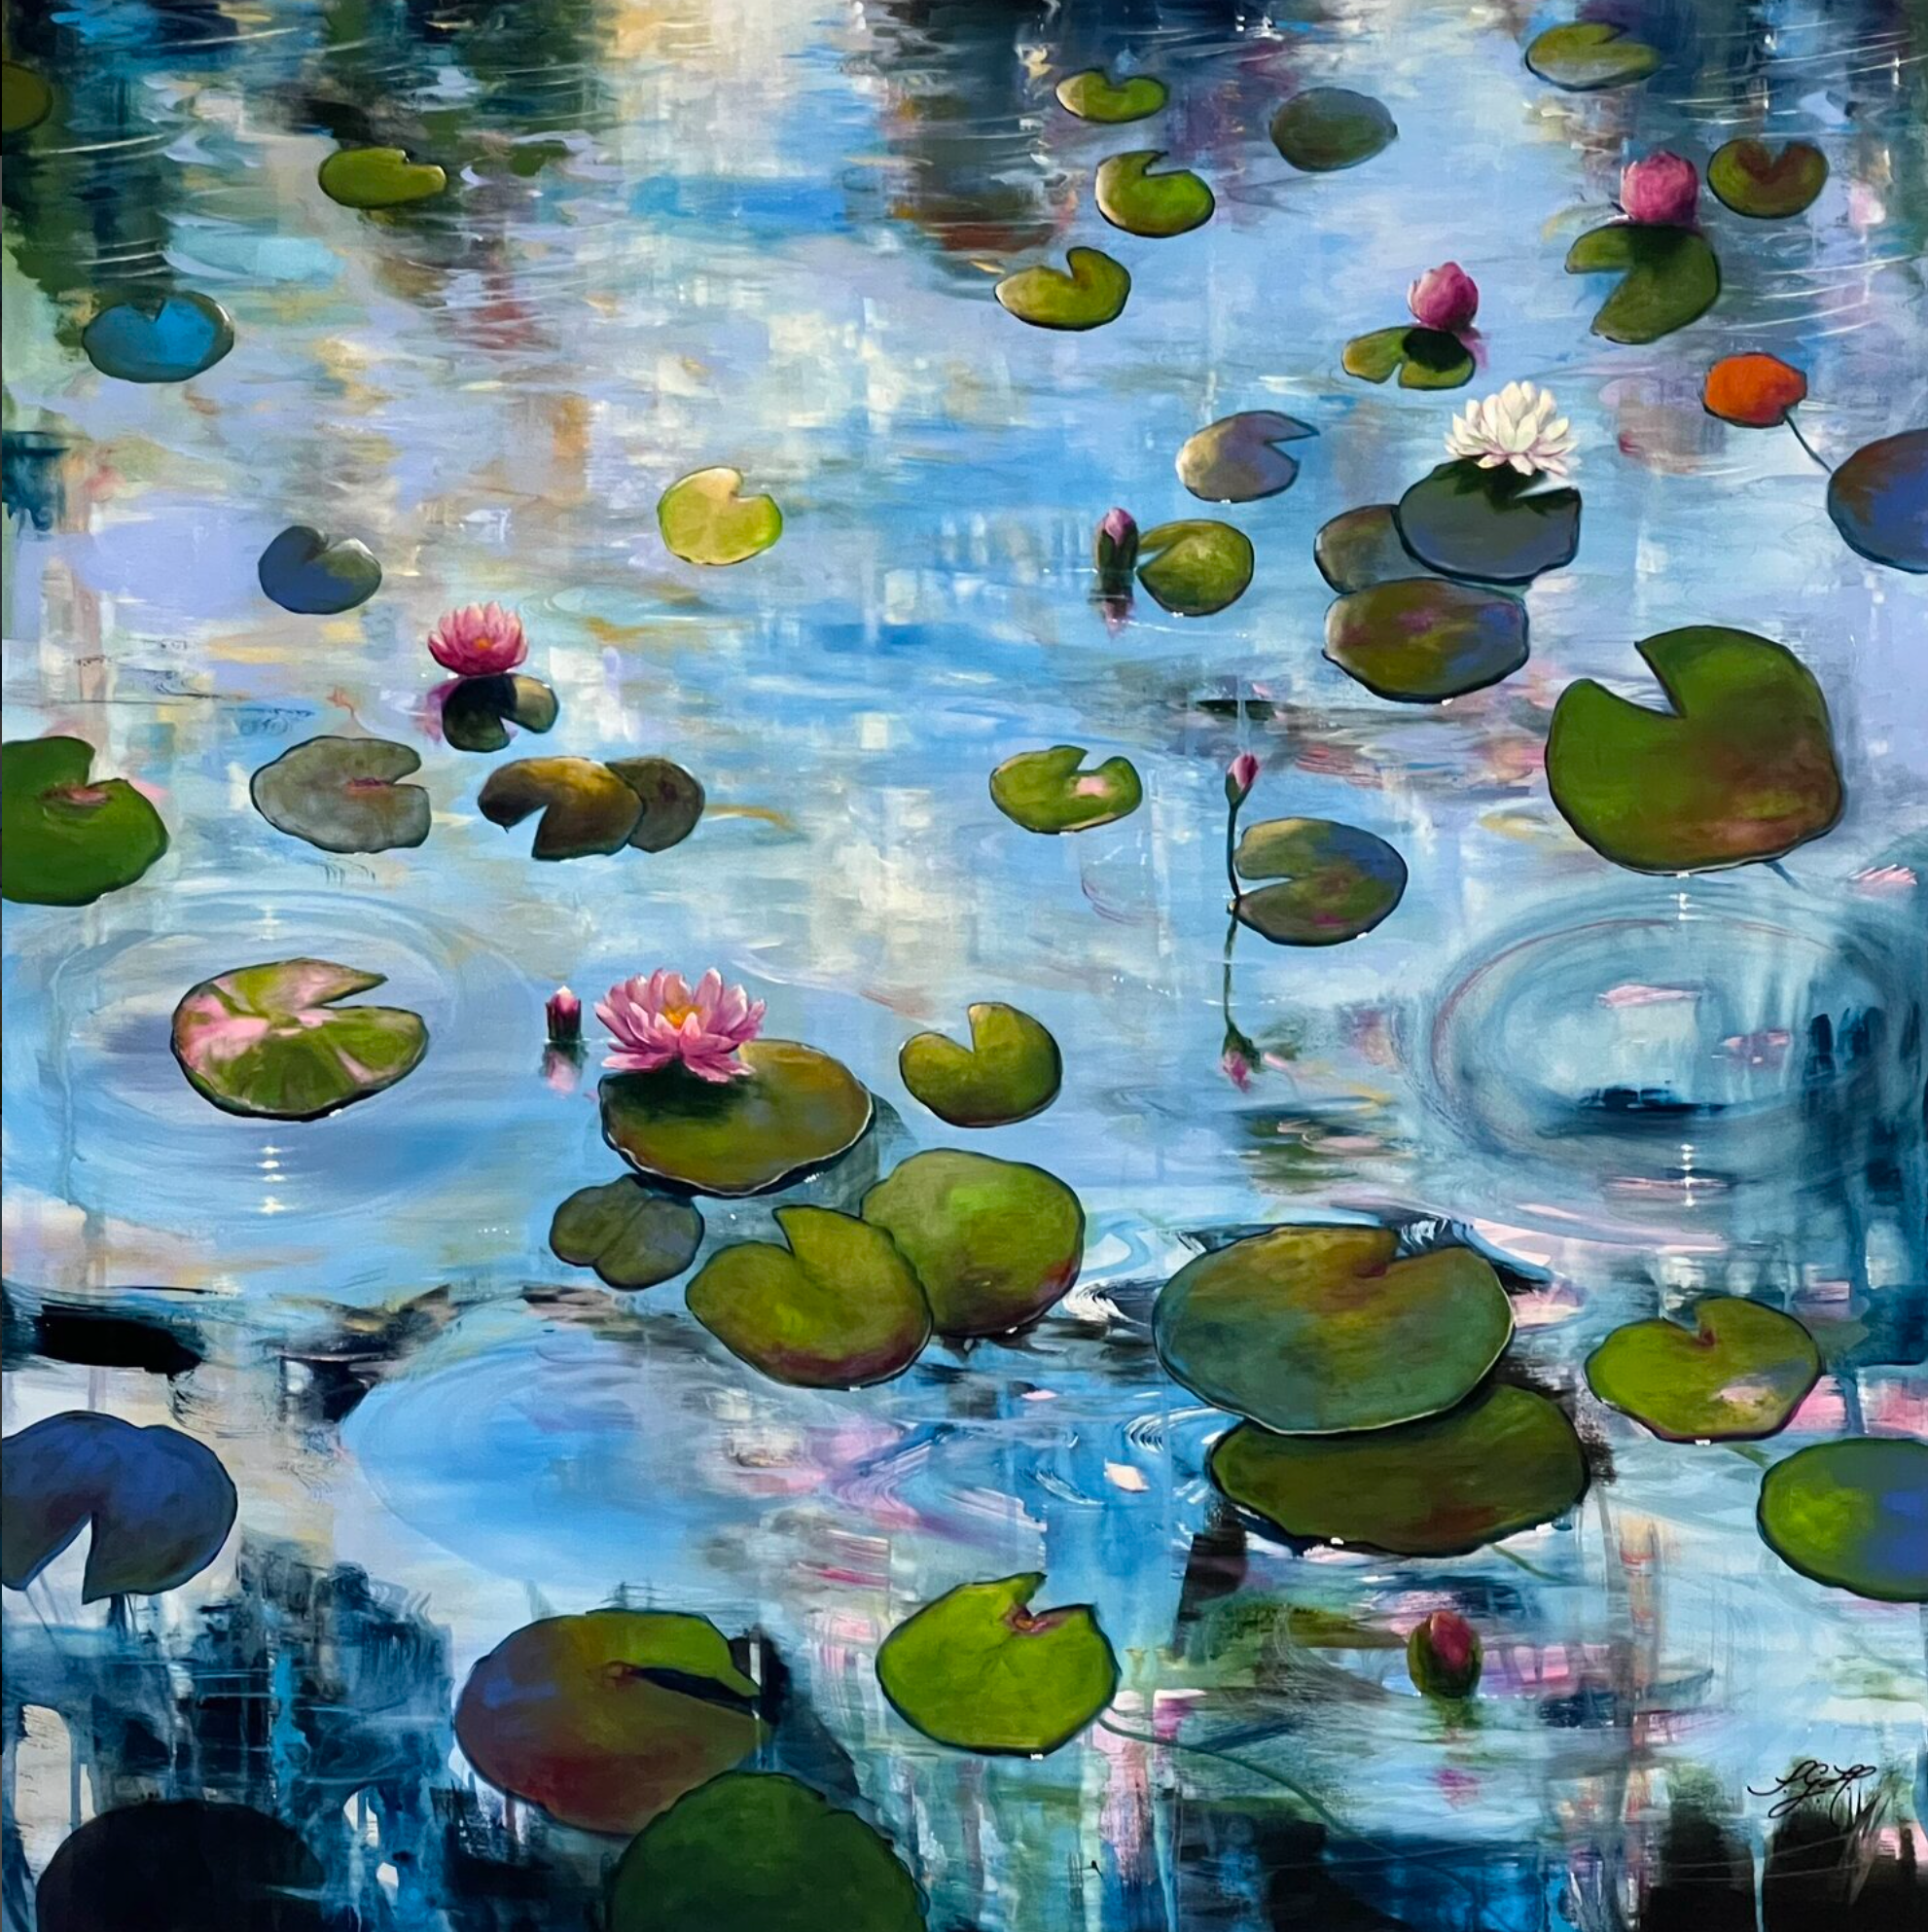 El colorido cuadro "Always Waterlilies 4" de Sandra Gebhardt-Hoepfner muestra nenúfares flotando sobre el agua en suave movimiento bajo el sol. La luz se refleja pacífica y danzante en la superficie del agua y brilla en algunos puntos.